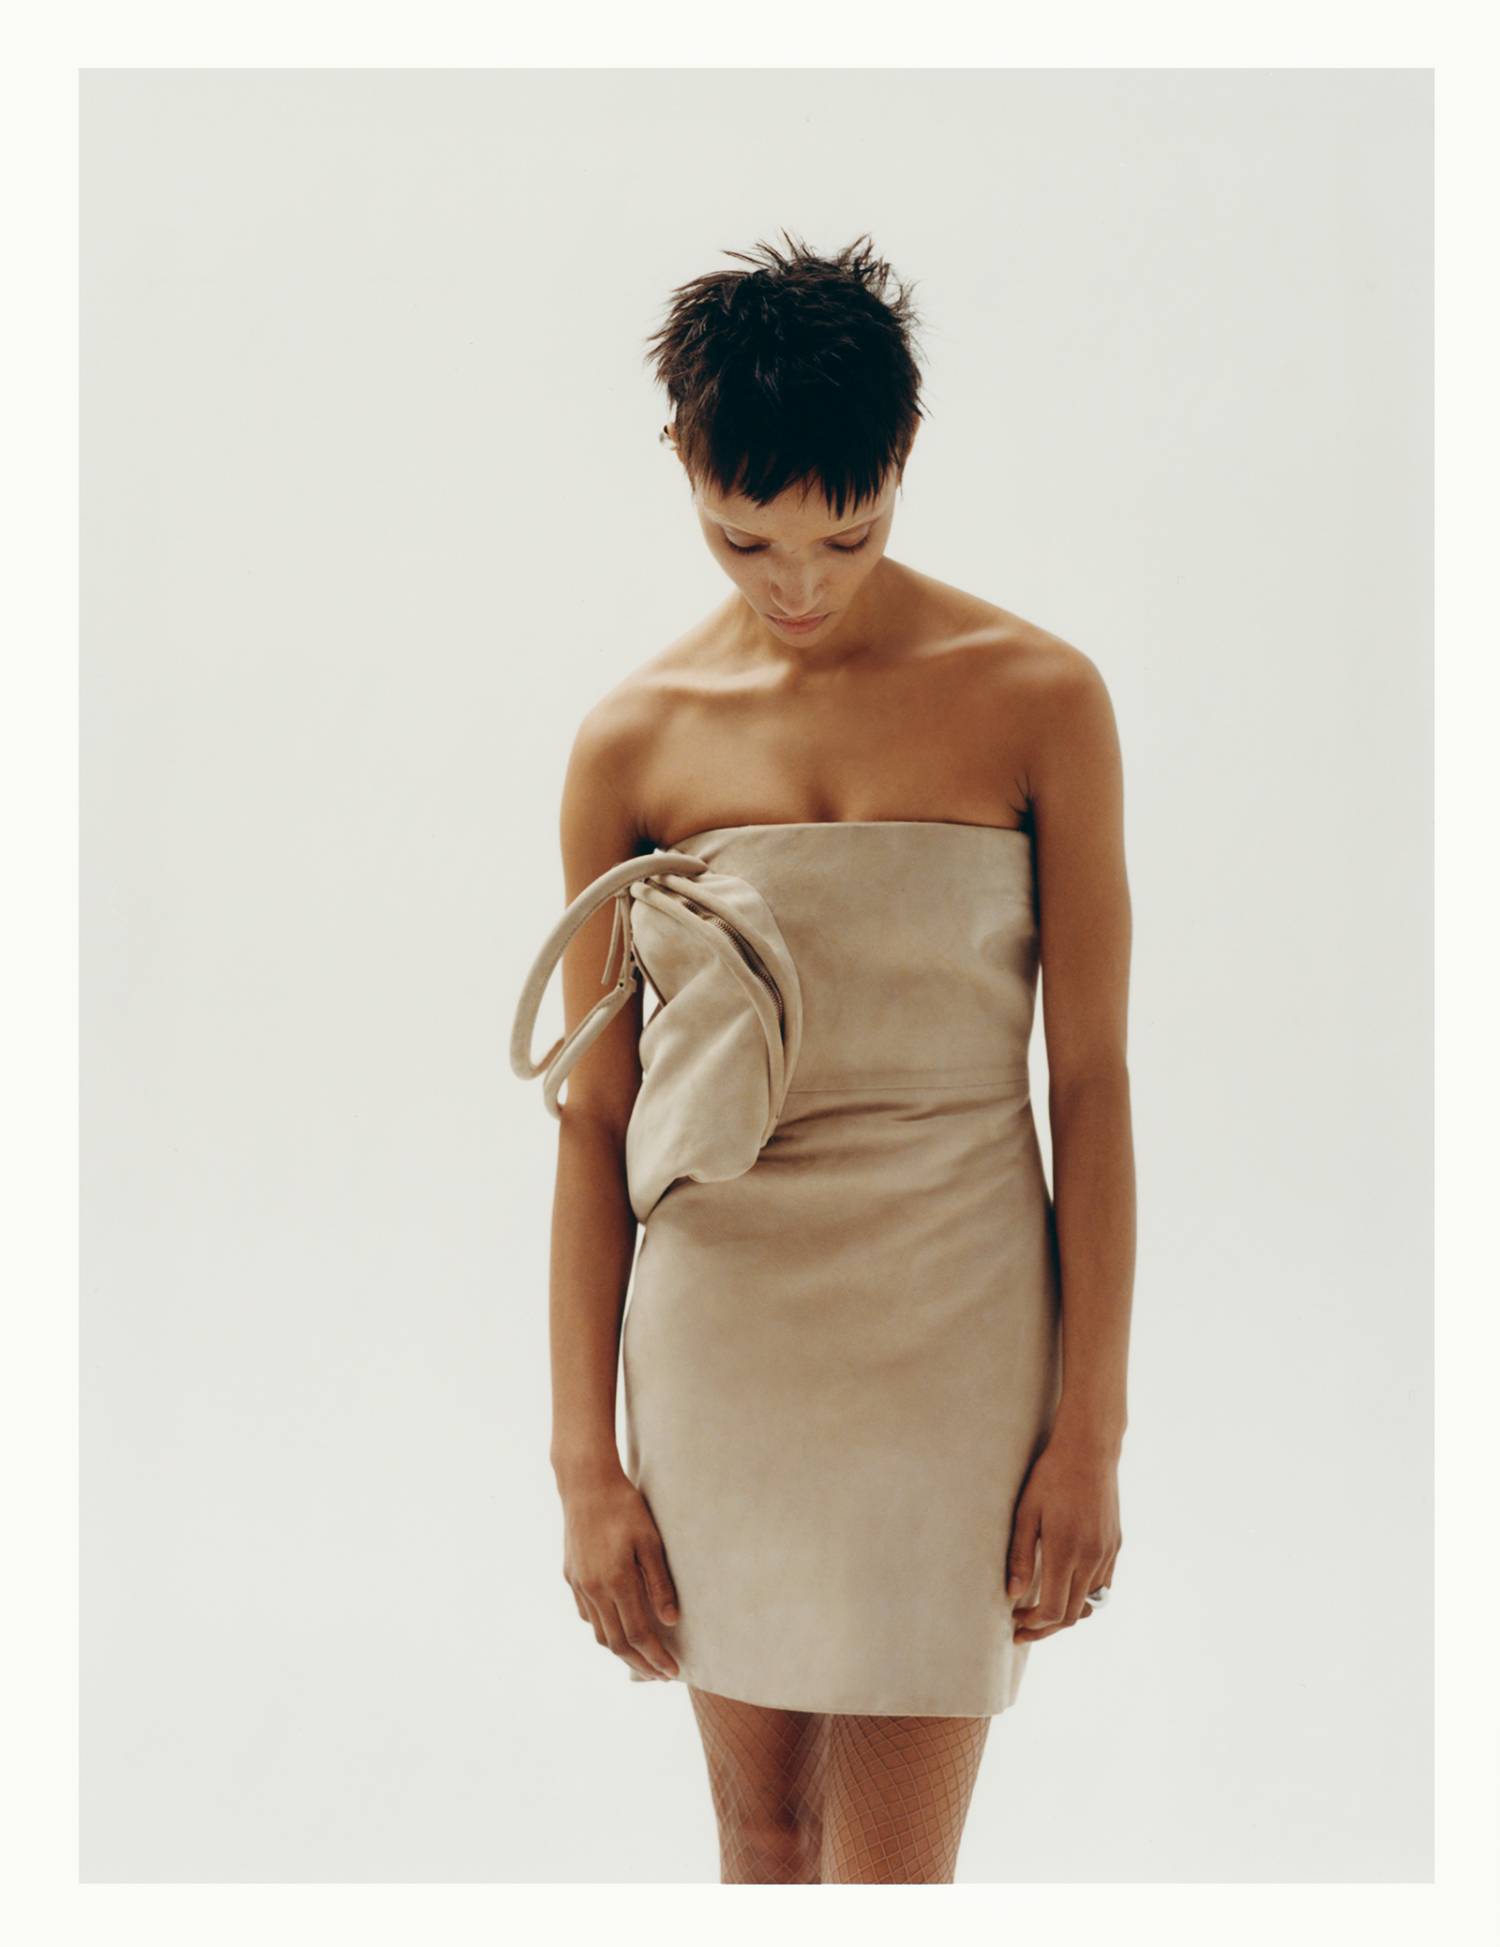 Georgia Palmer in Acne Studios Dress by Kulesza & Pik for Vogue Czechoslovakia March 2024